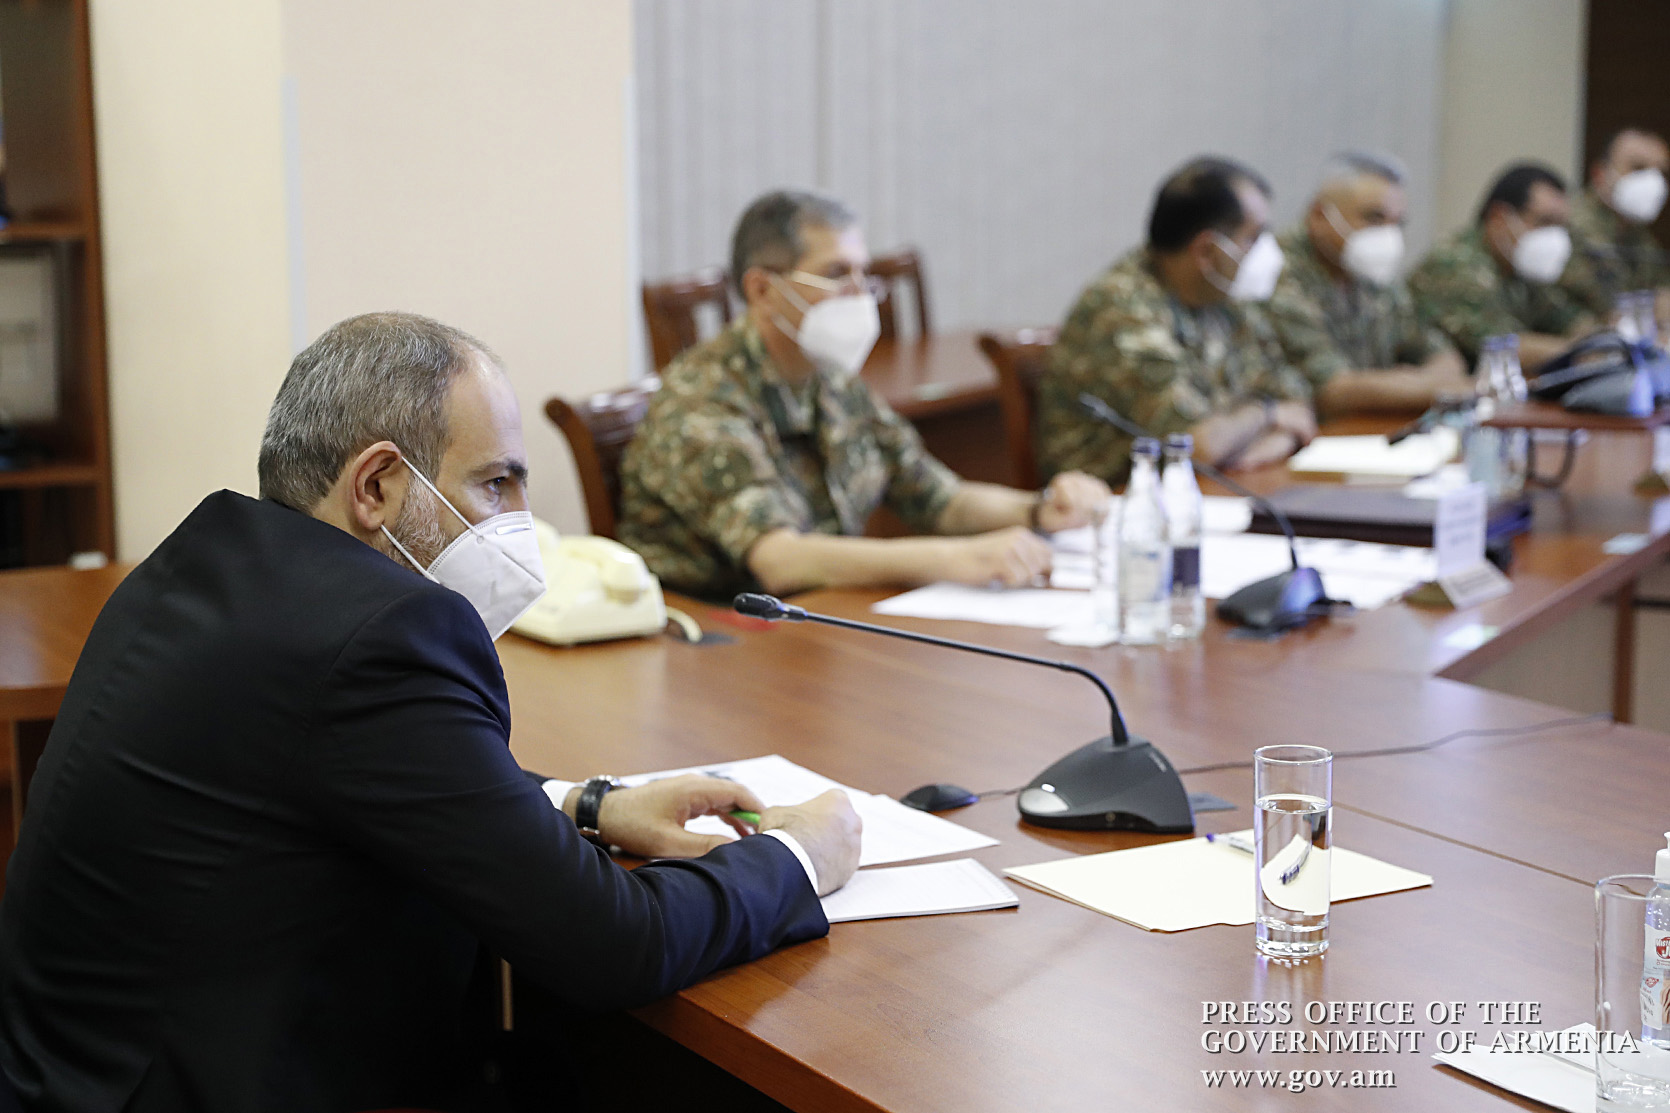 Сегодня у нас довольно высокие темпы и качество развития Вооруженных сил: Никол Пашинян в МО